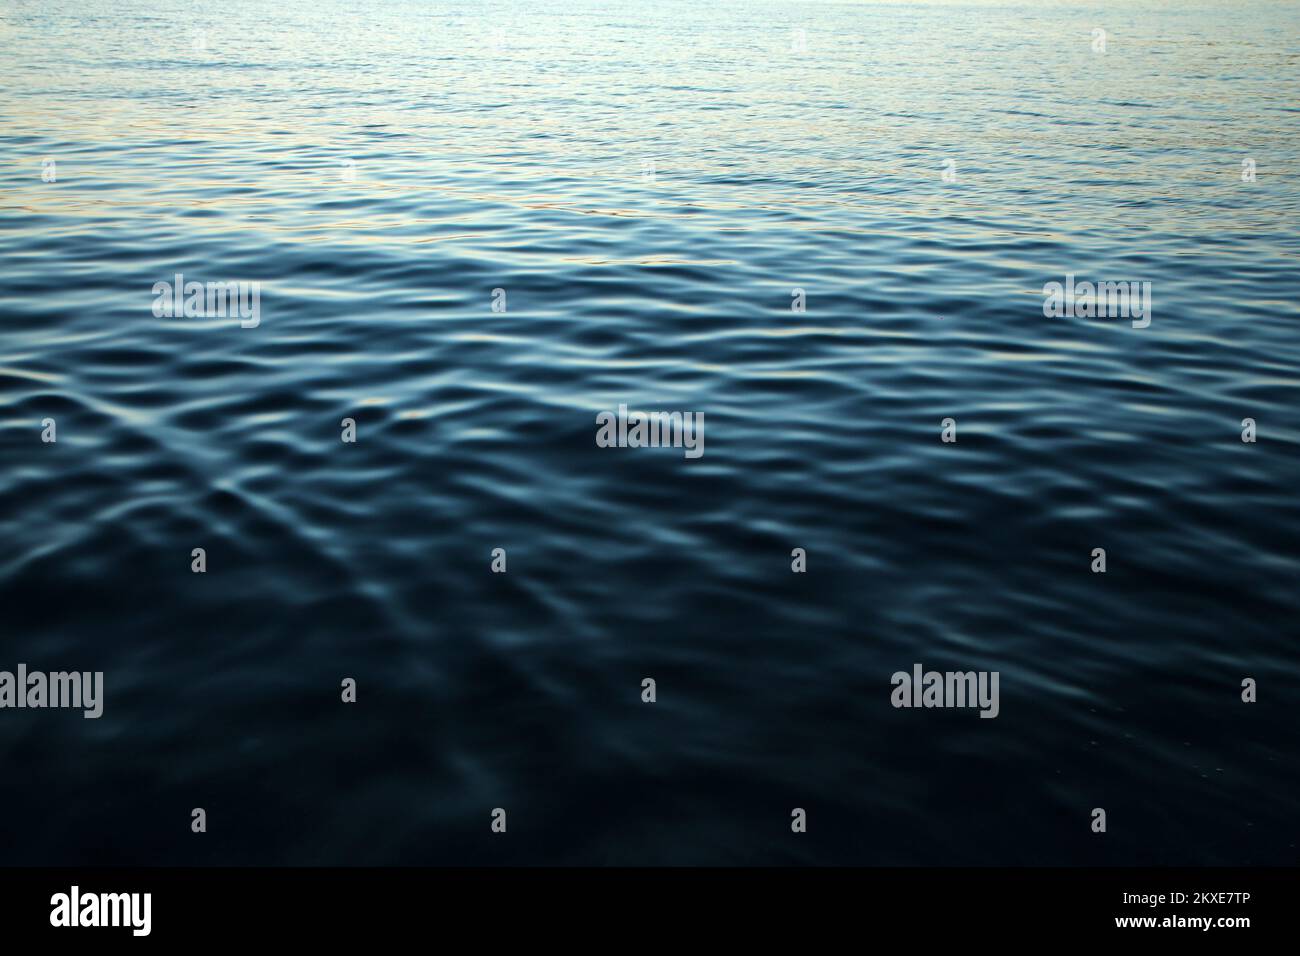 Il particolare della superficie calma del mare con le piccole onde durante la sera, mentre il sole è già sceso e le sfumature blu è venuto. Foto Stock